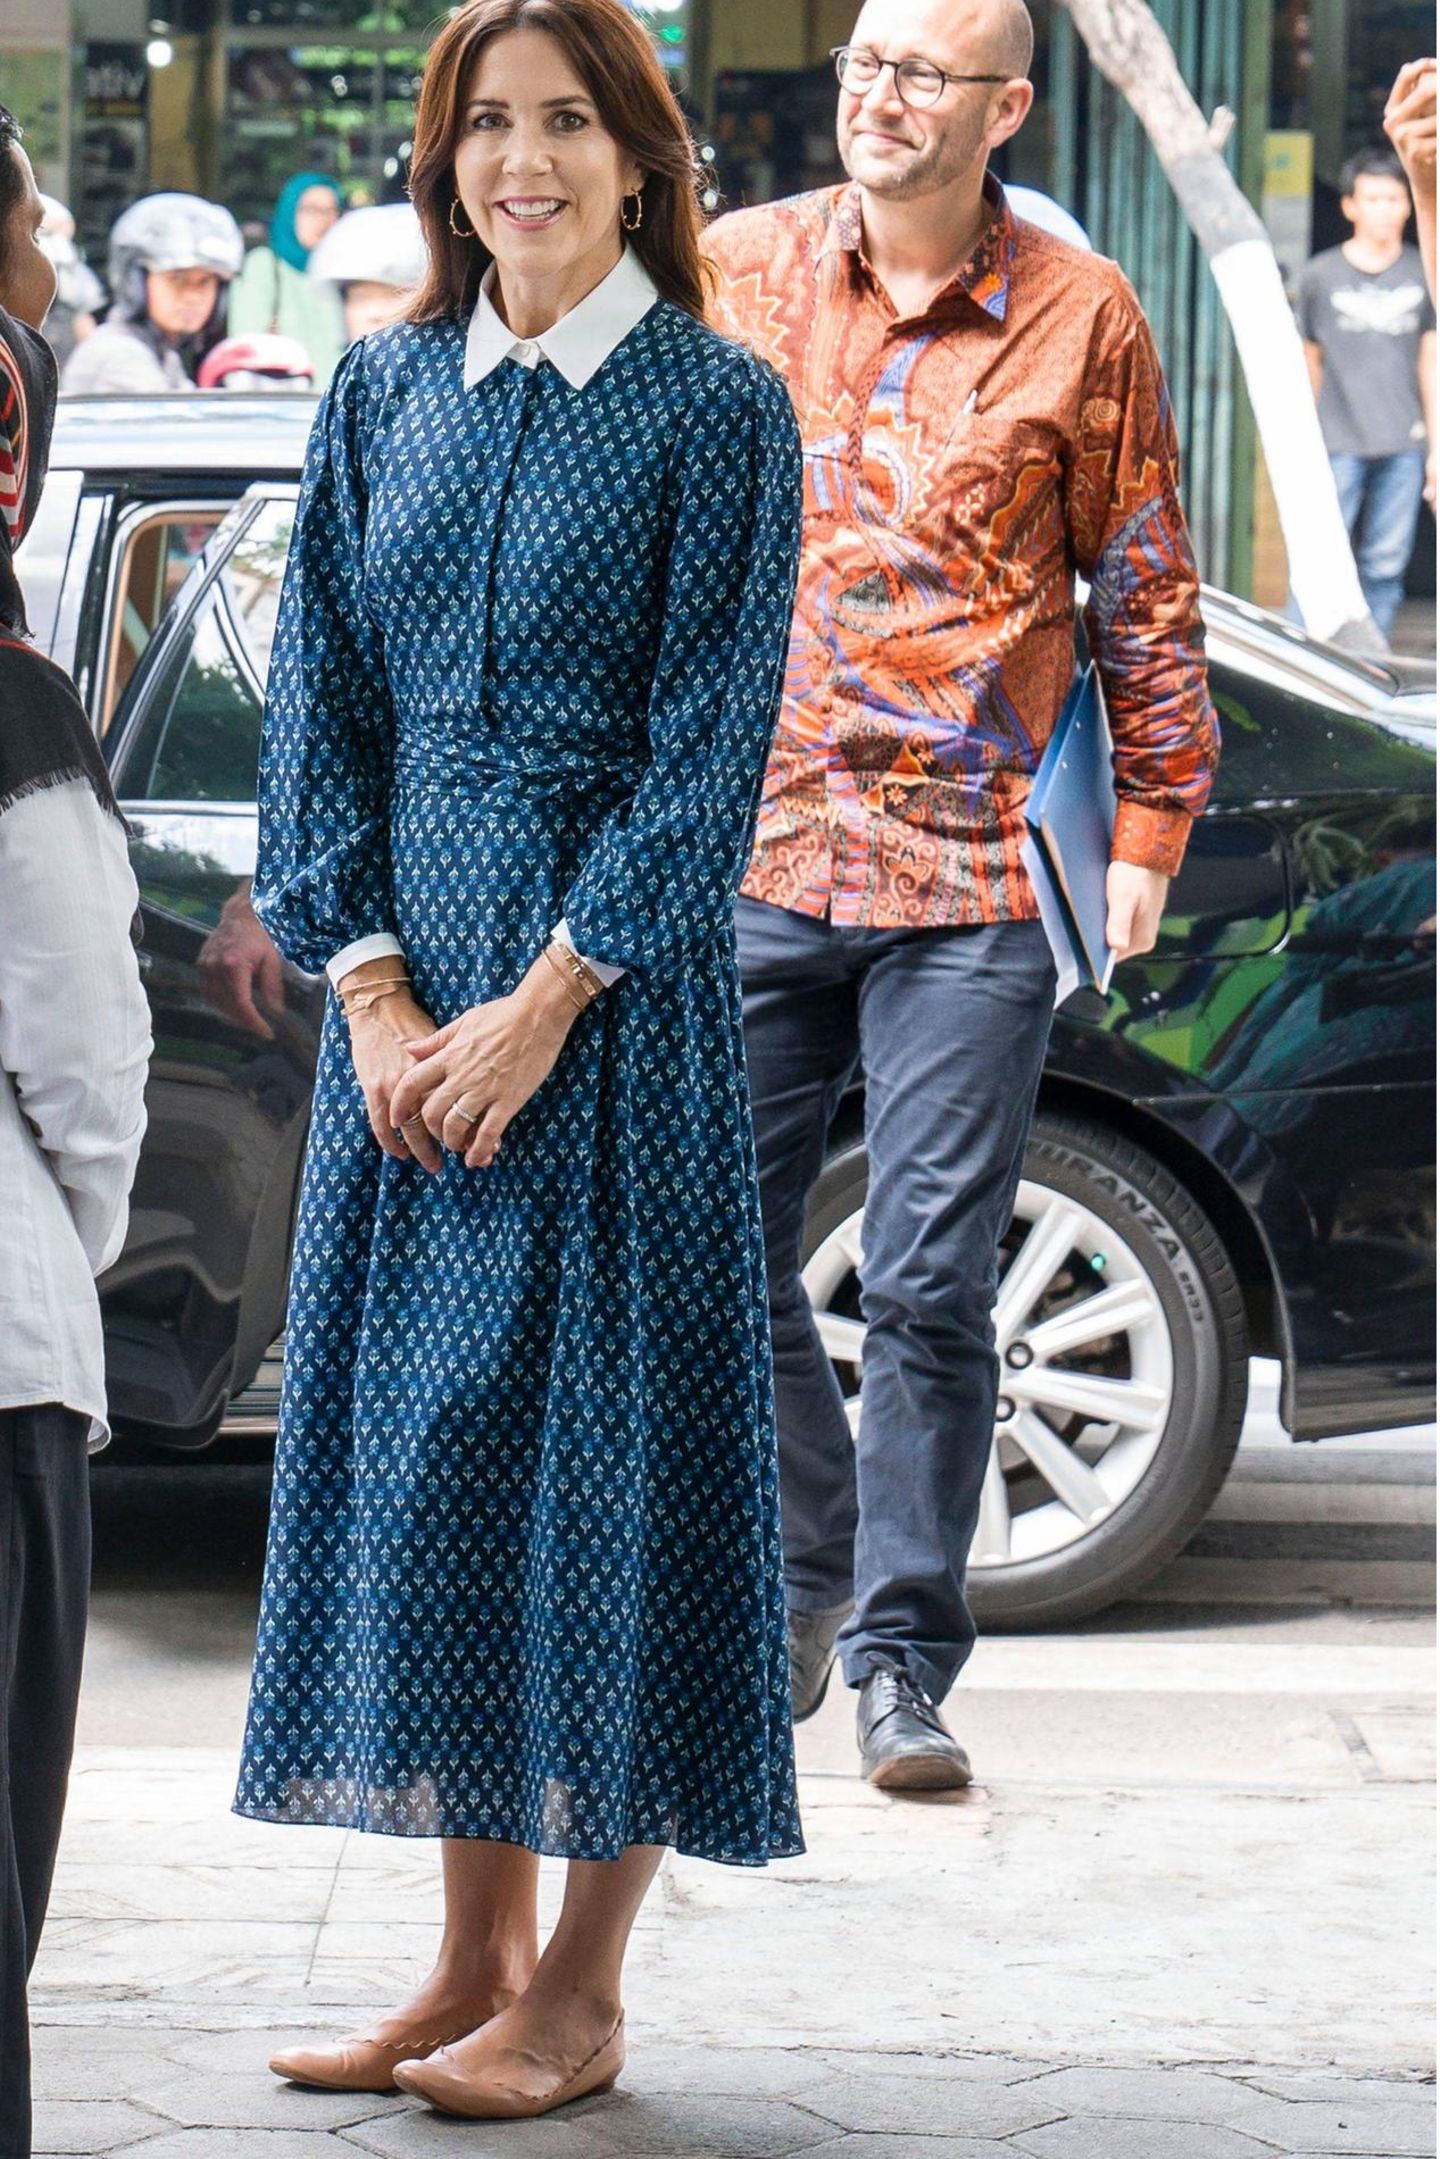 Prinzessin Mary von Dänemark trägt das Kleid schon im Dezember 2019 während einer Reise nach Indonesien. Auch sie sieht in dem femininen Design von Beulah toll aus. Sie kombiniert es jedoch zu flachen beigen Ballerina-Schuhen, was den Look komplett anders wirken lässt. 